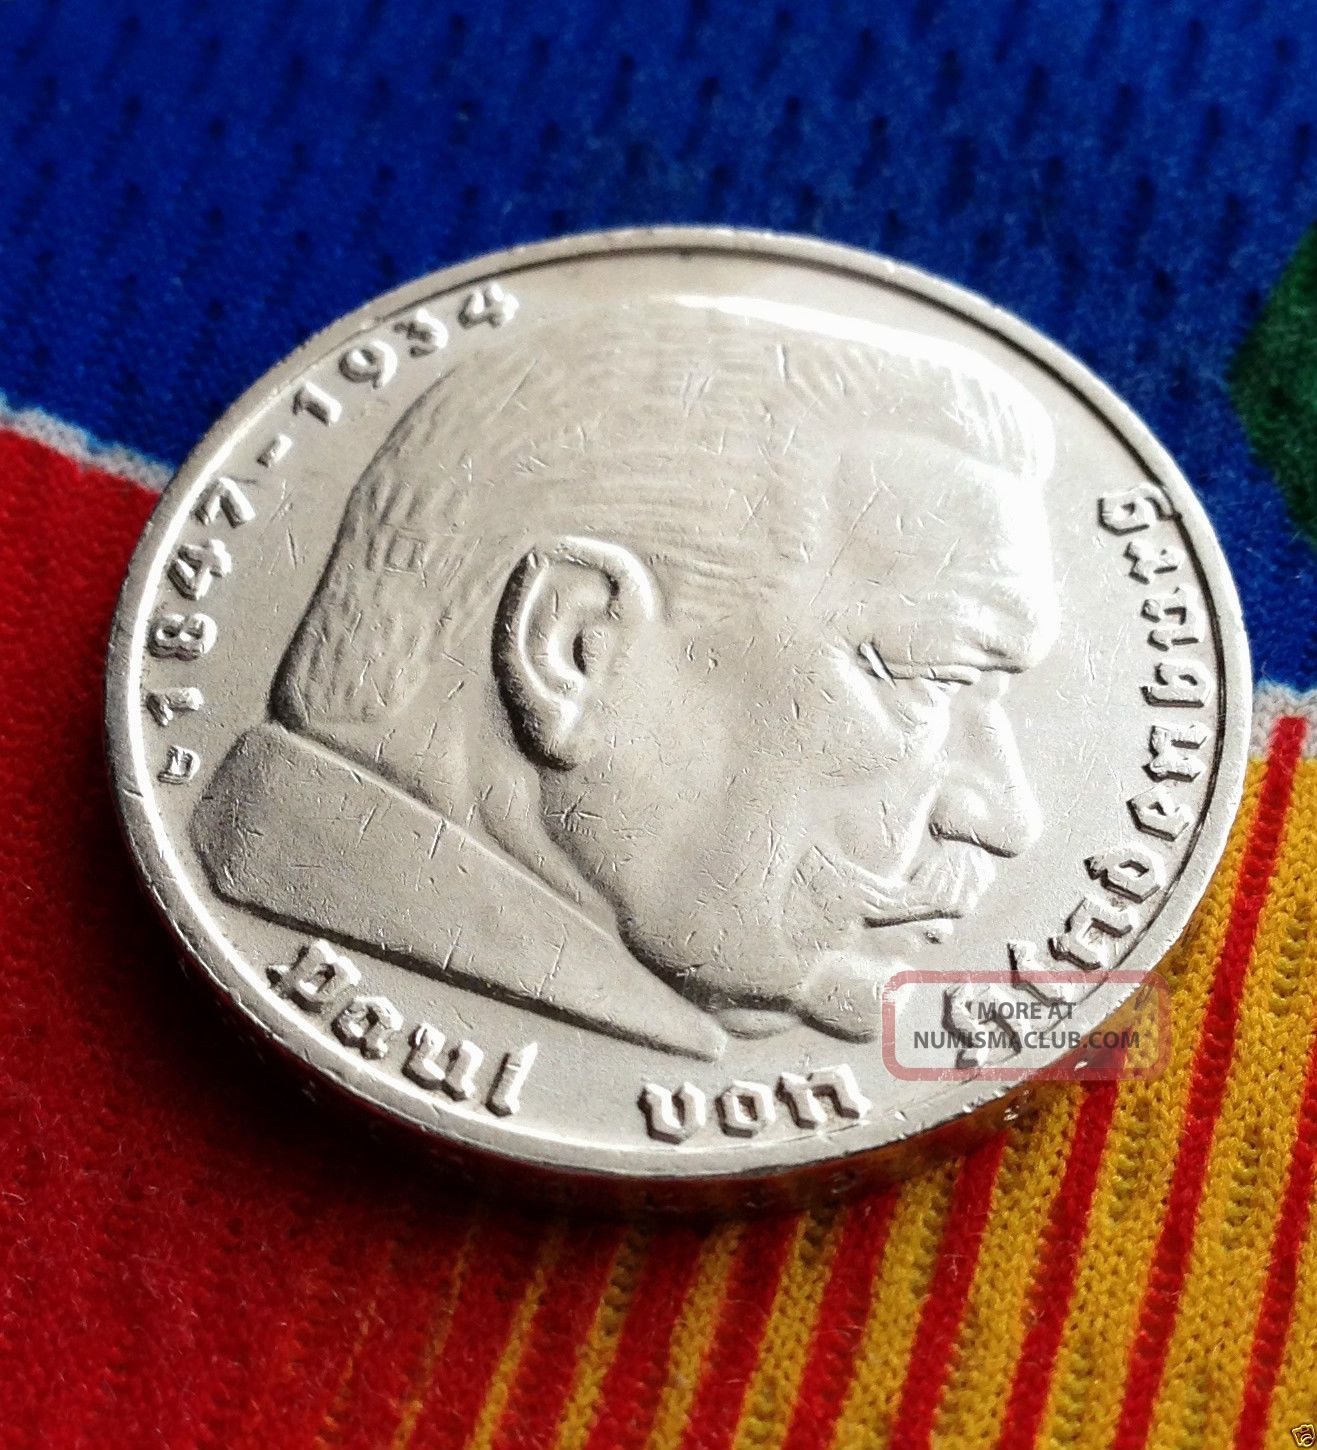 Ww2 German 5 Mark Silver Coin 1937 D Third Reich Swastika Reichsmark